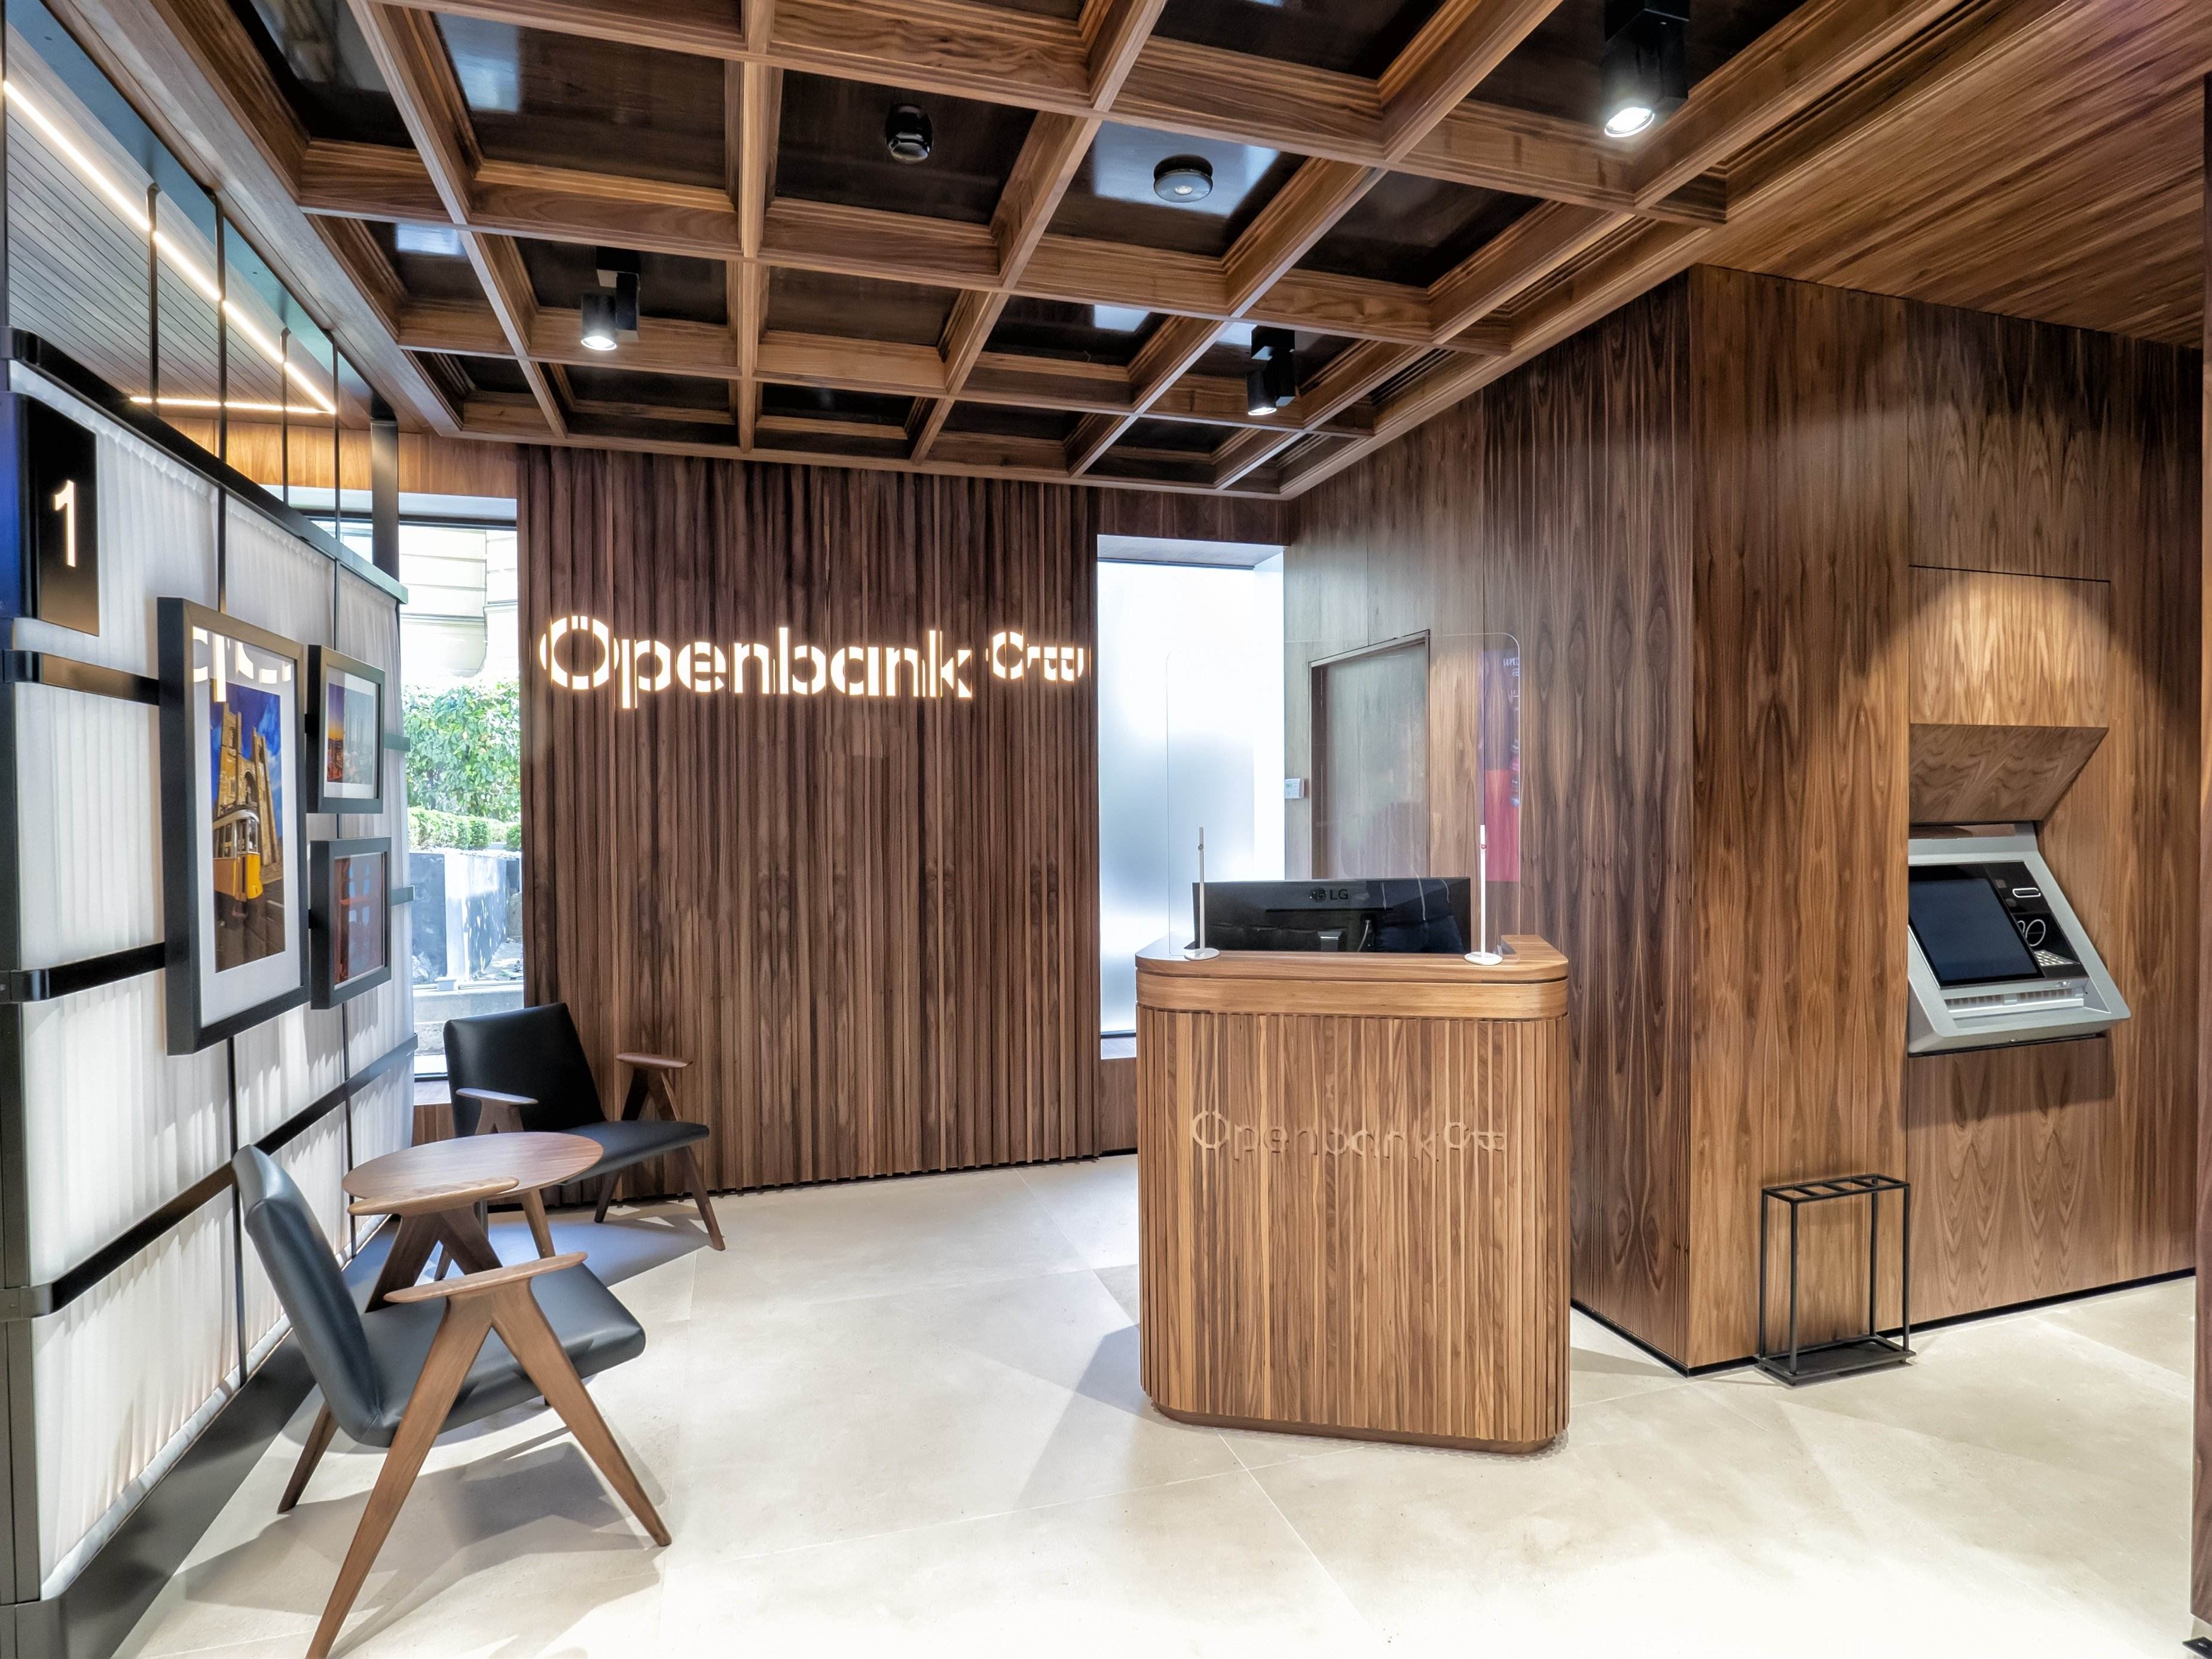 Imagin toma la delantera en la banca digital y dobla a Openbank en clientes